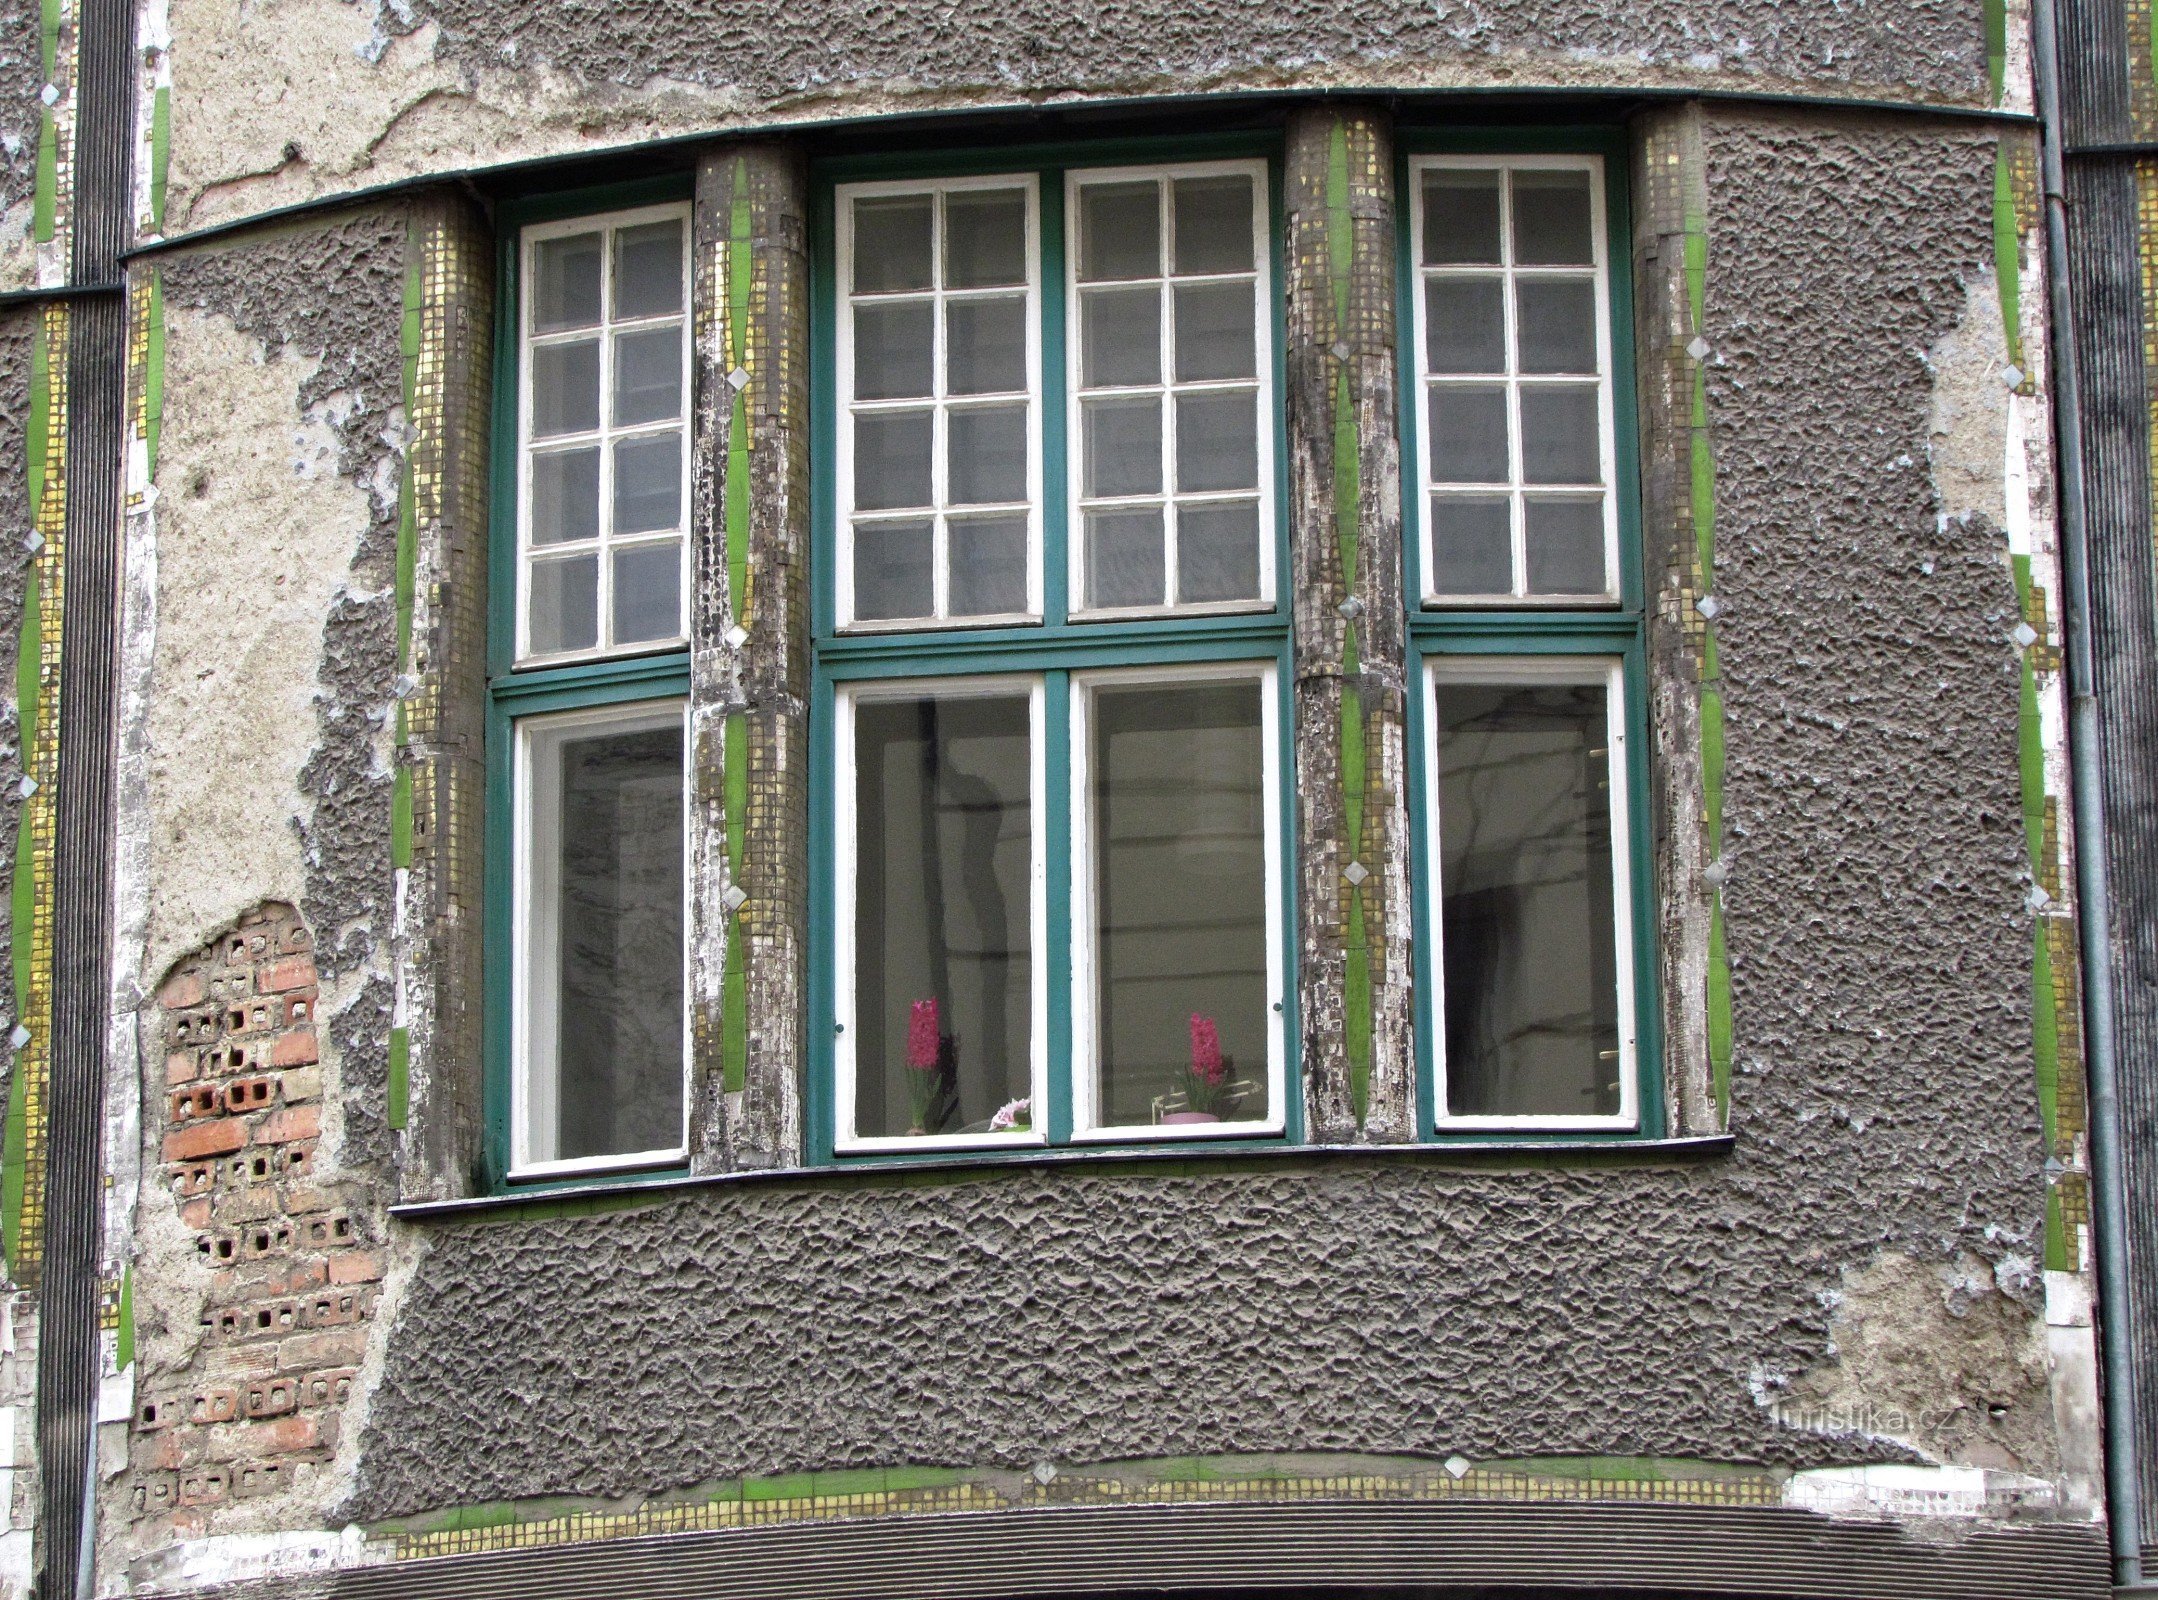 Brno - Jurkovič's house